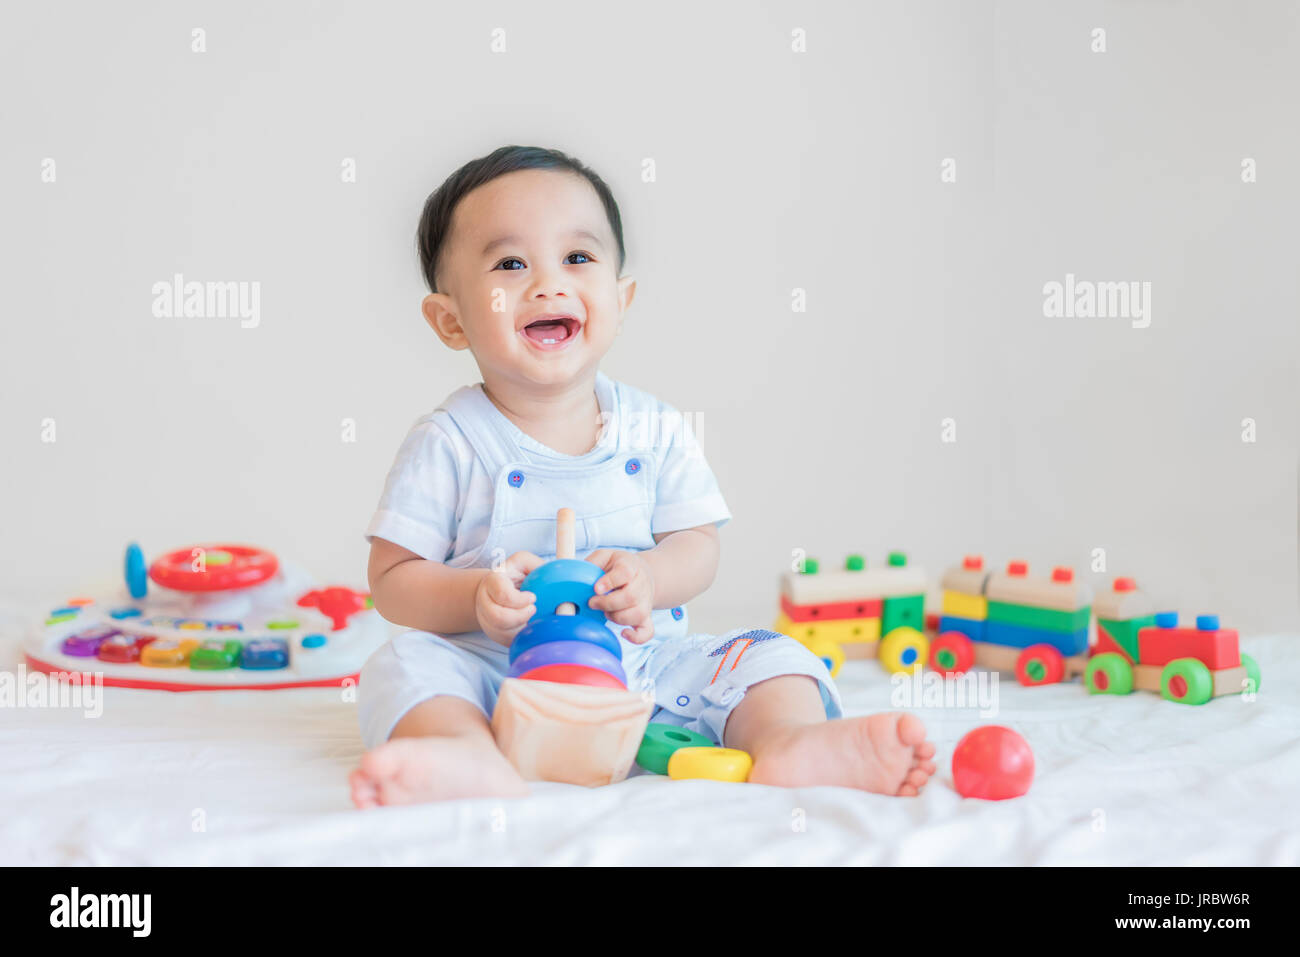 Entzückende asiatische Baby junge 9 Monate am Bett sitzen und spielen mit Farbe Entwicklungsstörungen Spielzeug zu Hause. Stockfoto